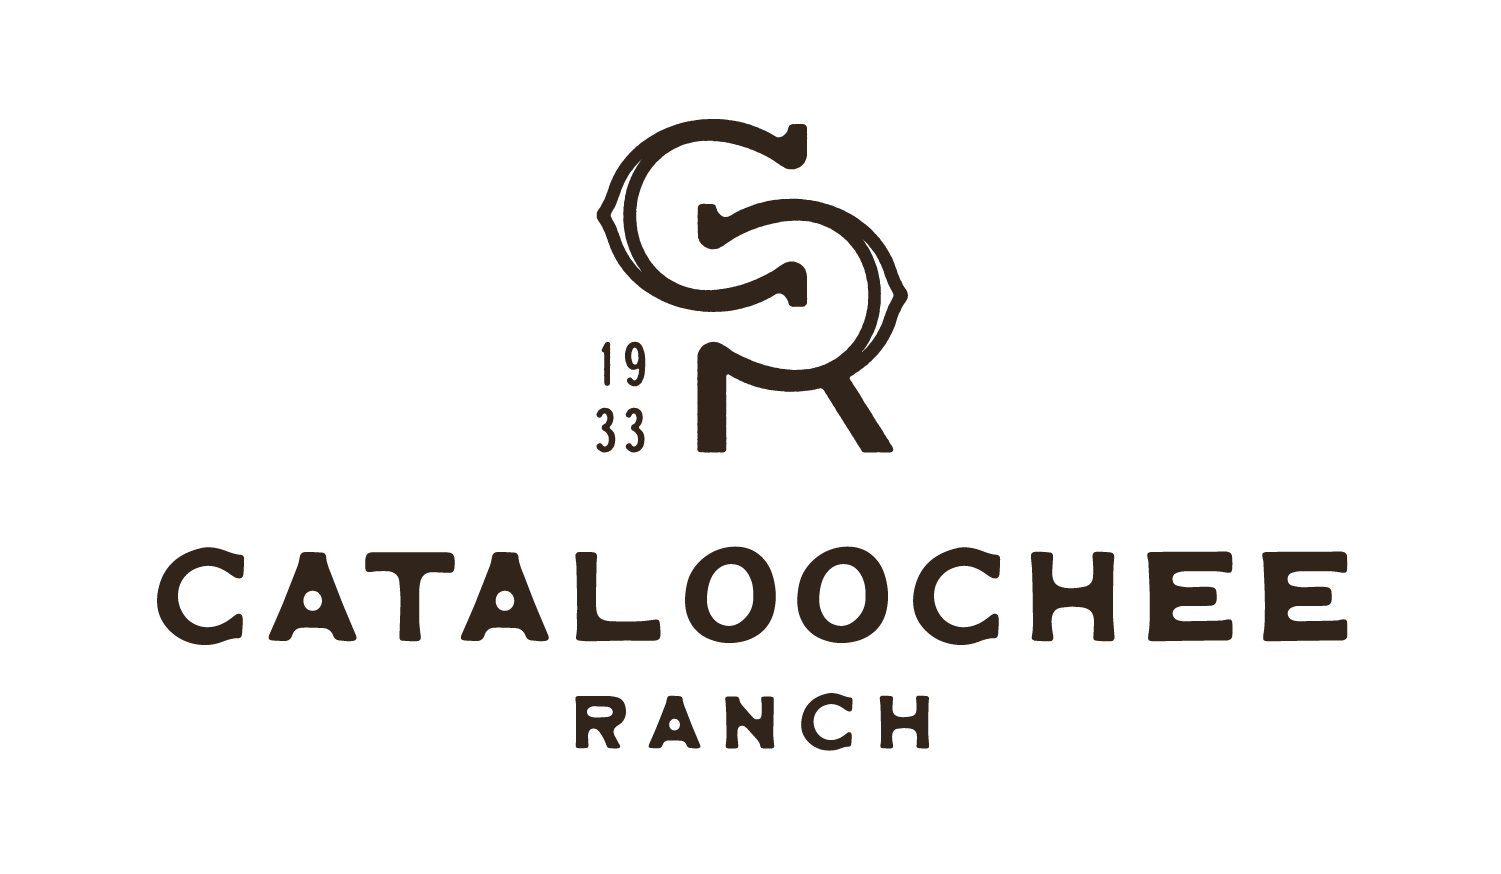 Cataloochee Ranch